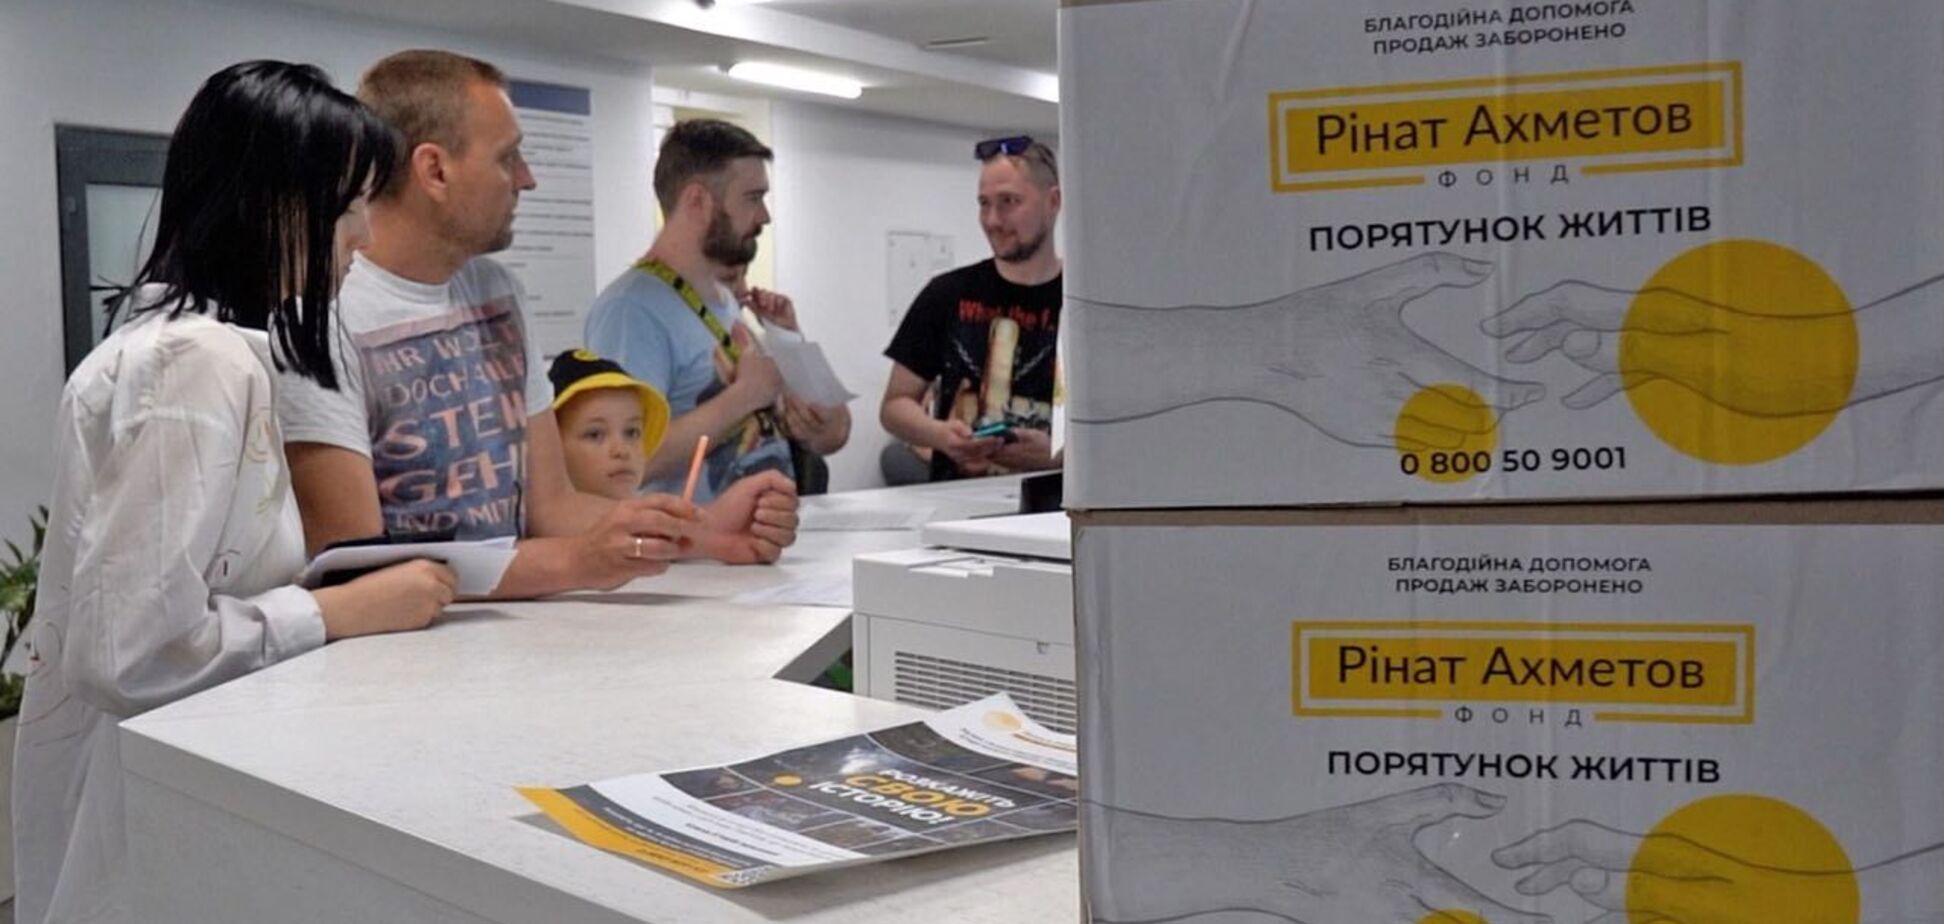 Фонд Рината Ахметова передал очередную партию продуктов в Киев, на этот раз на Оболонь